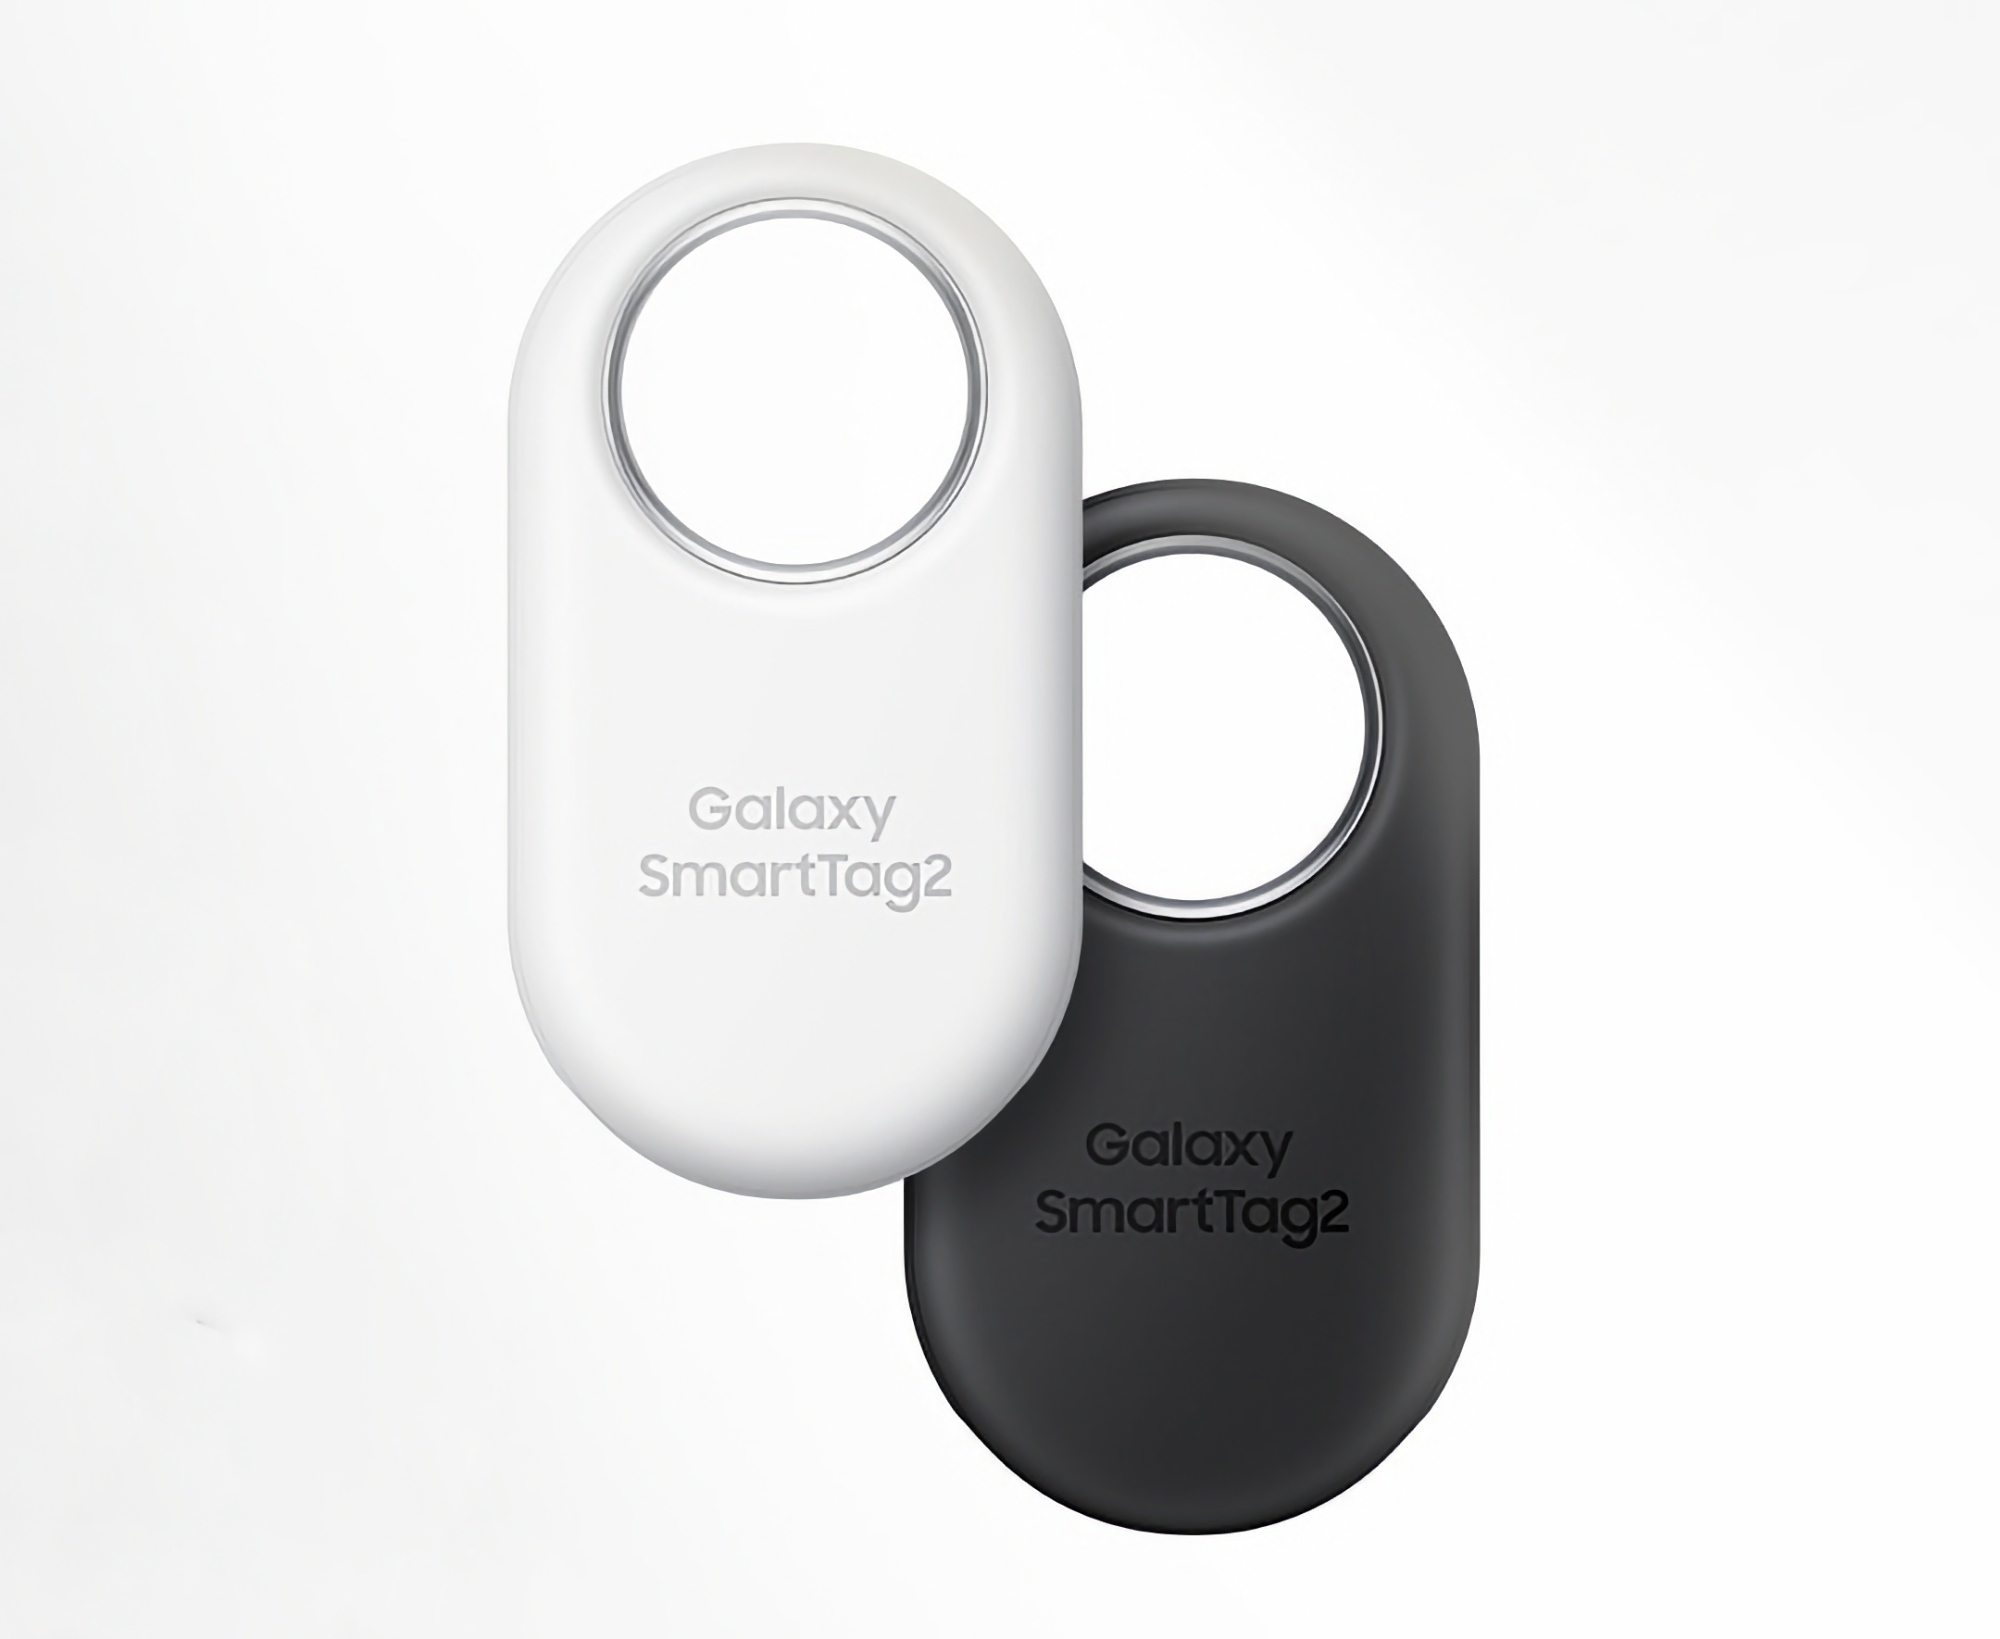 Samsung Galaxy SmartTag 2 kan tegen een promotieprijs worden gekocht op Amazon